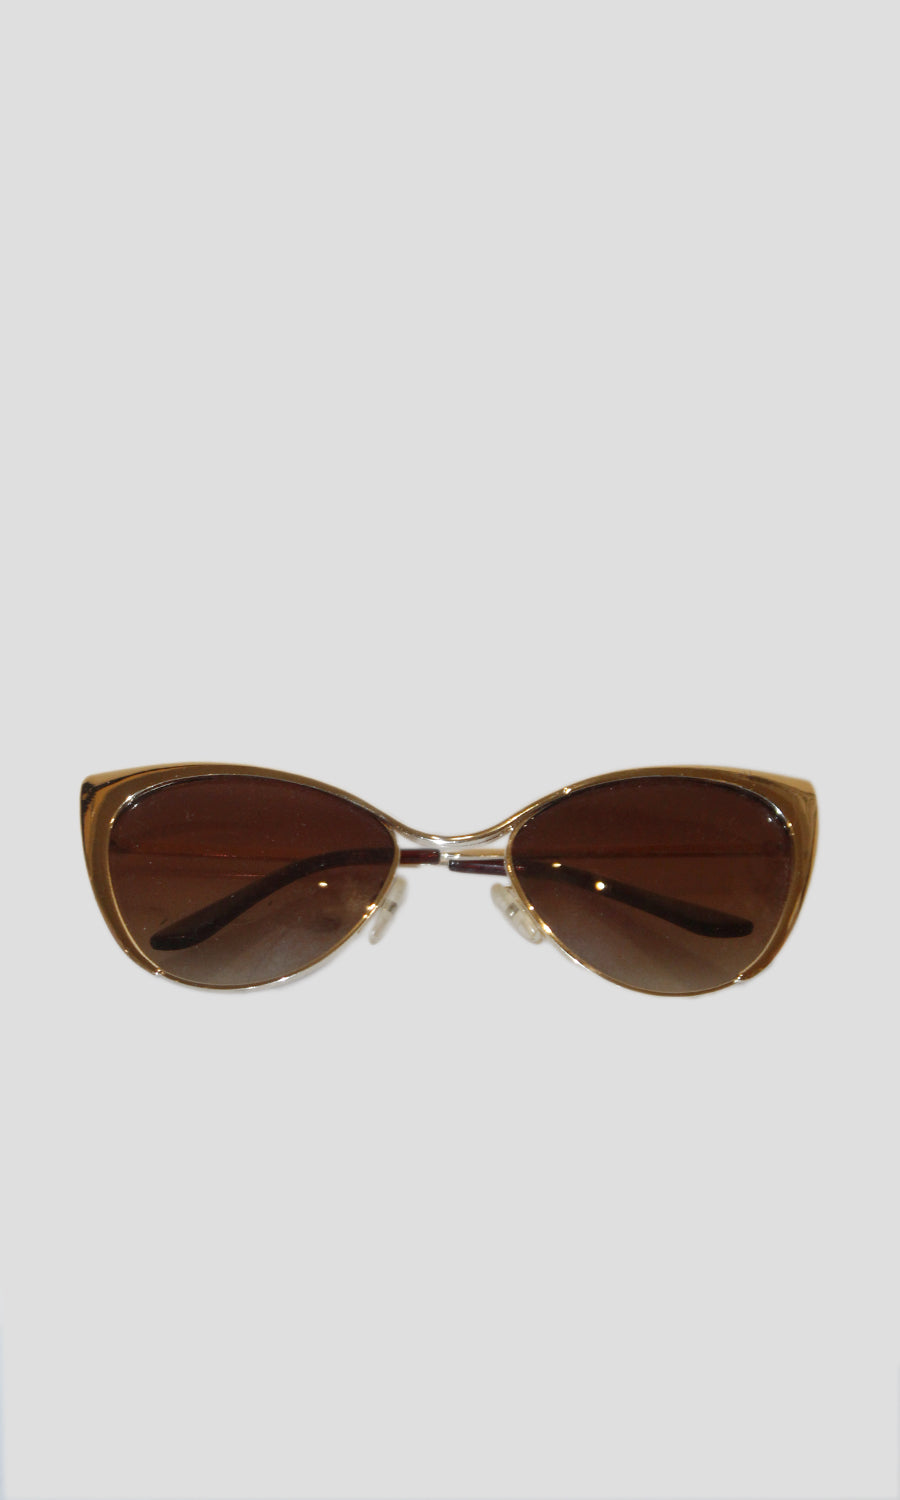 Gold Retro Cateye Sunglasses